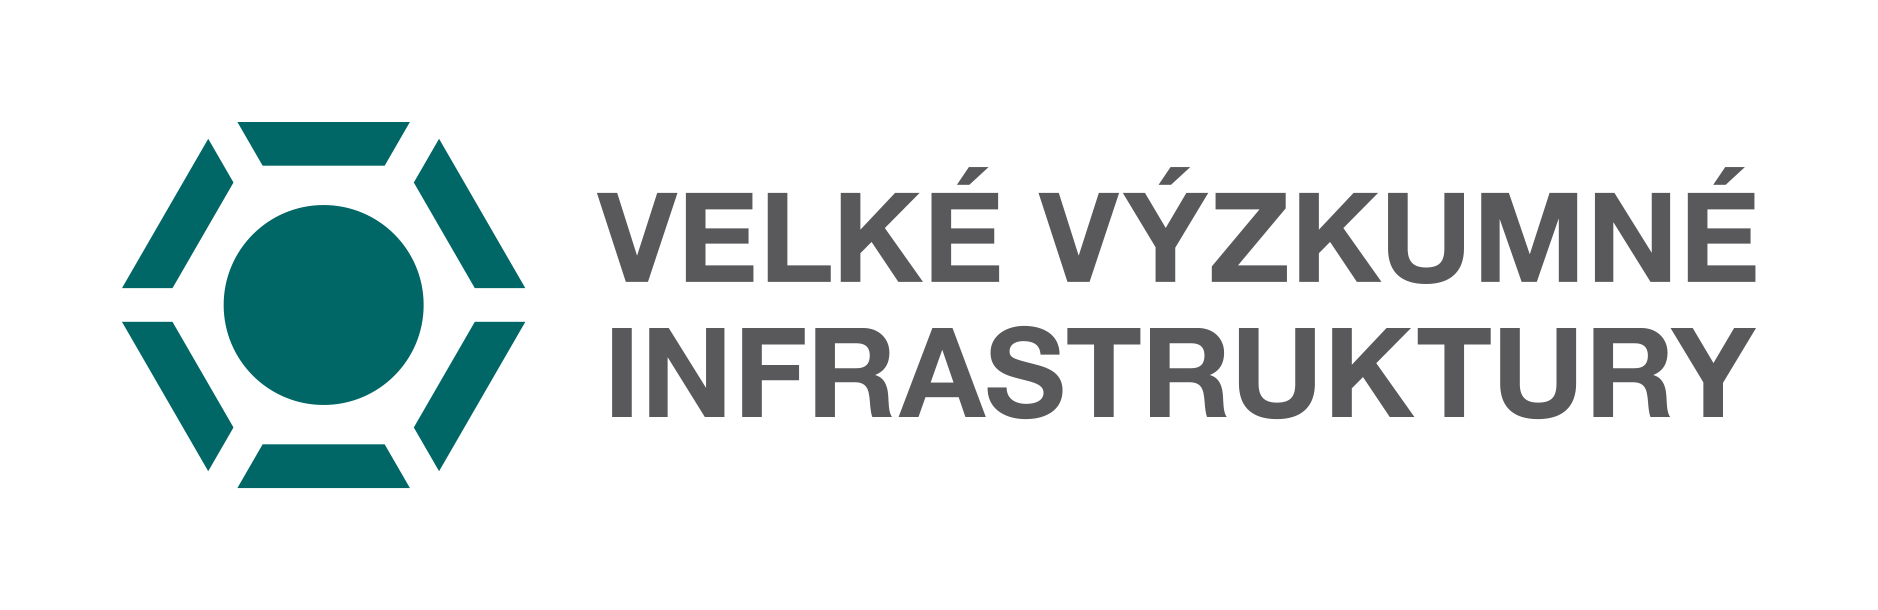 Infrastruktury - logo